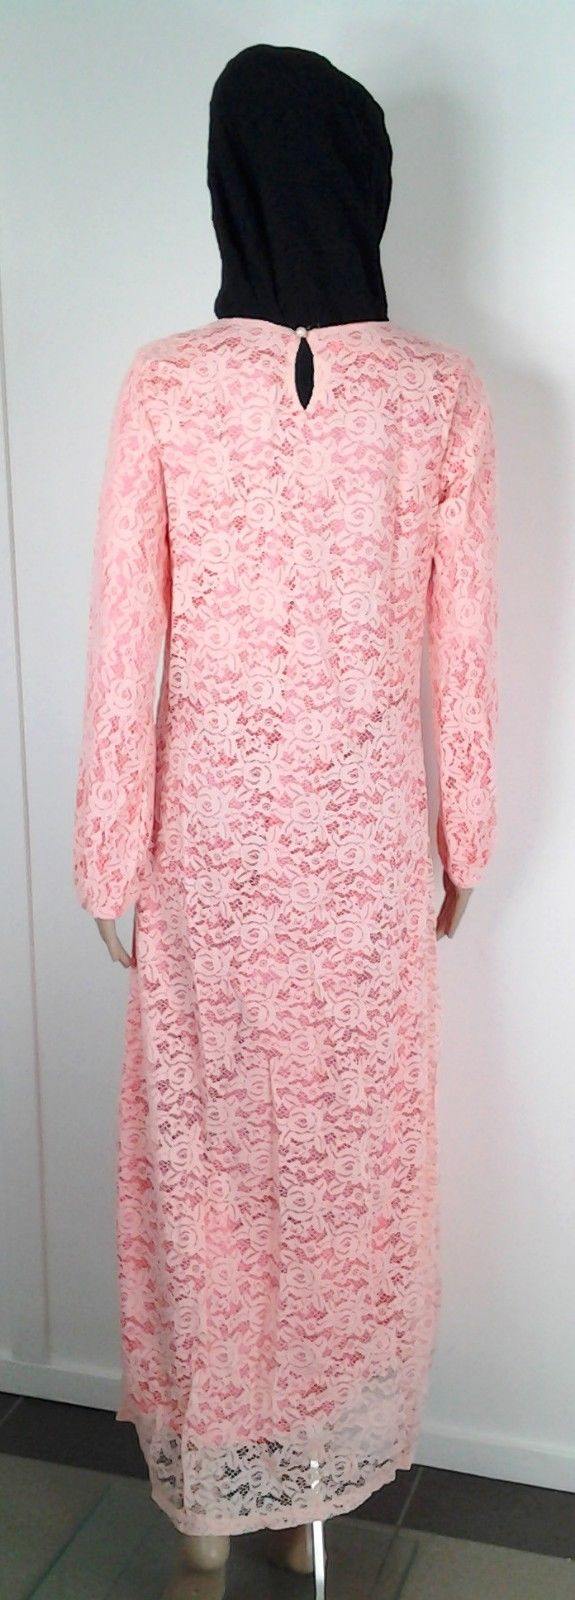 Lace Kaftan Women Islamic Abaya Jilbab Long Sleeve HSZ10016 (US6/EU36/UK10) - Arabian Shopping Zone